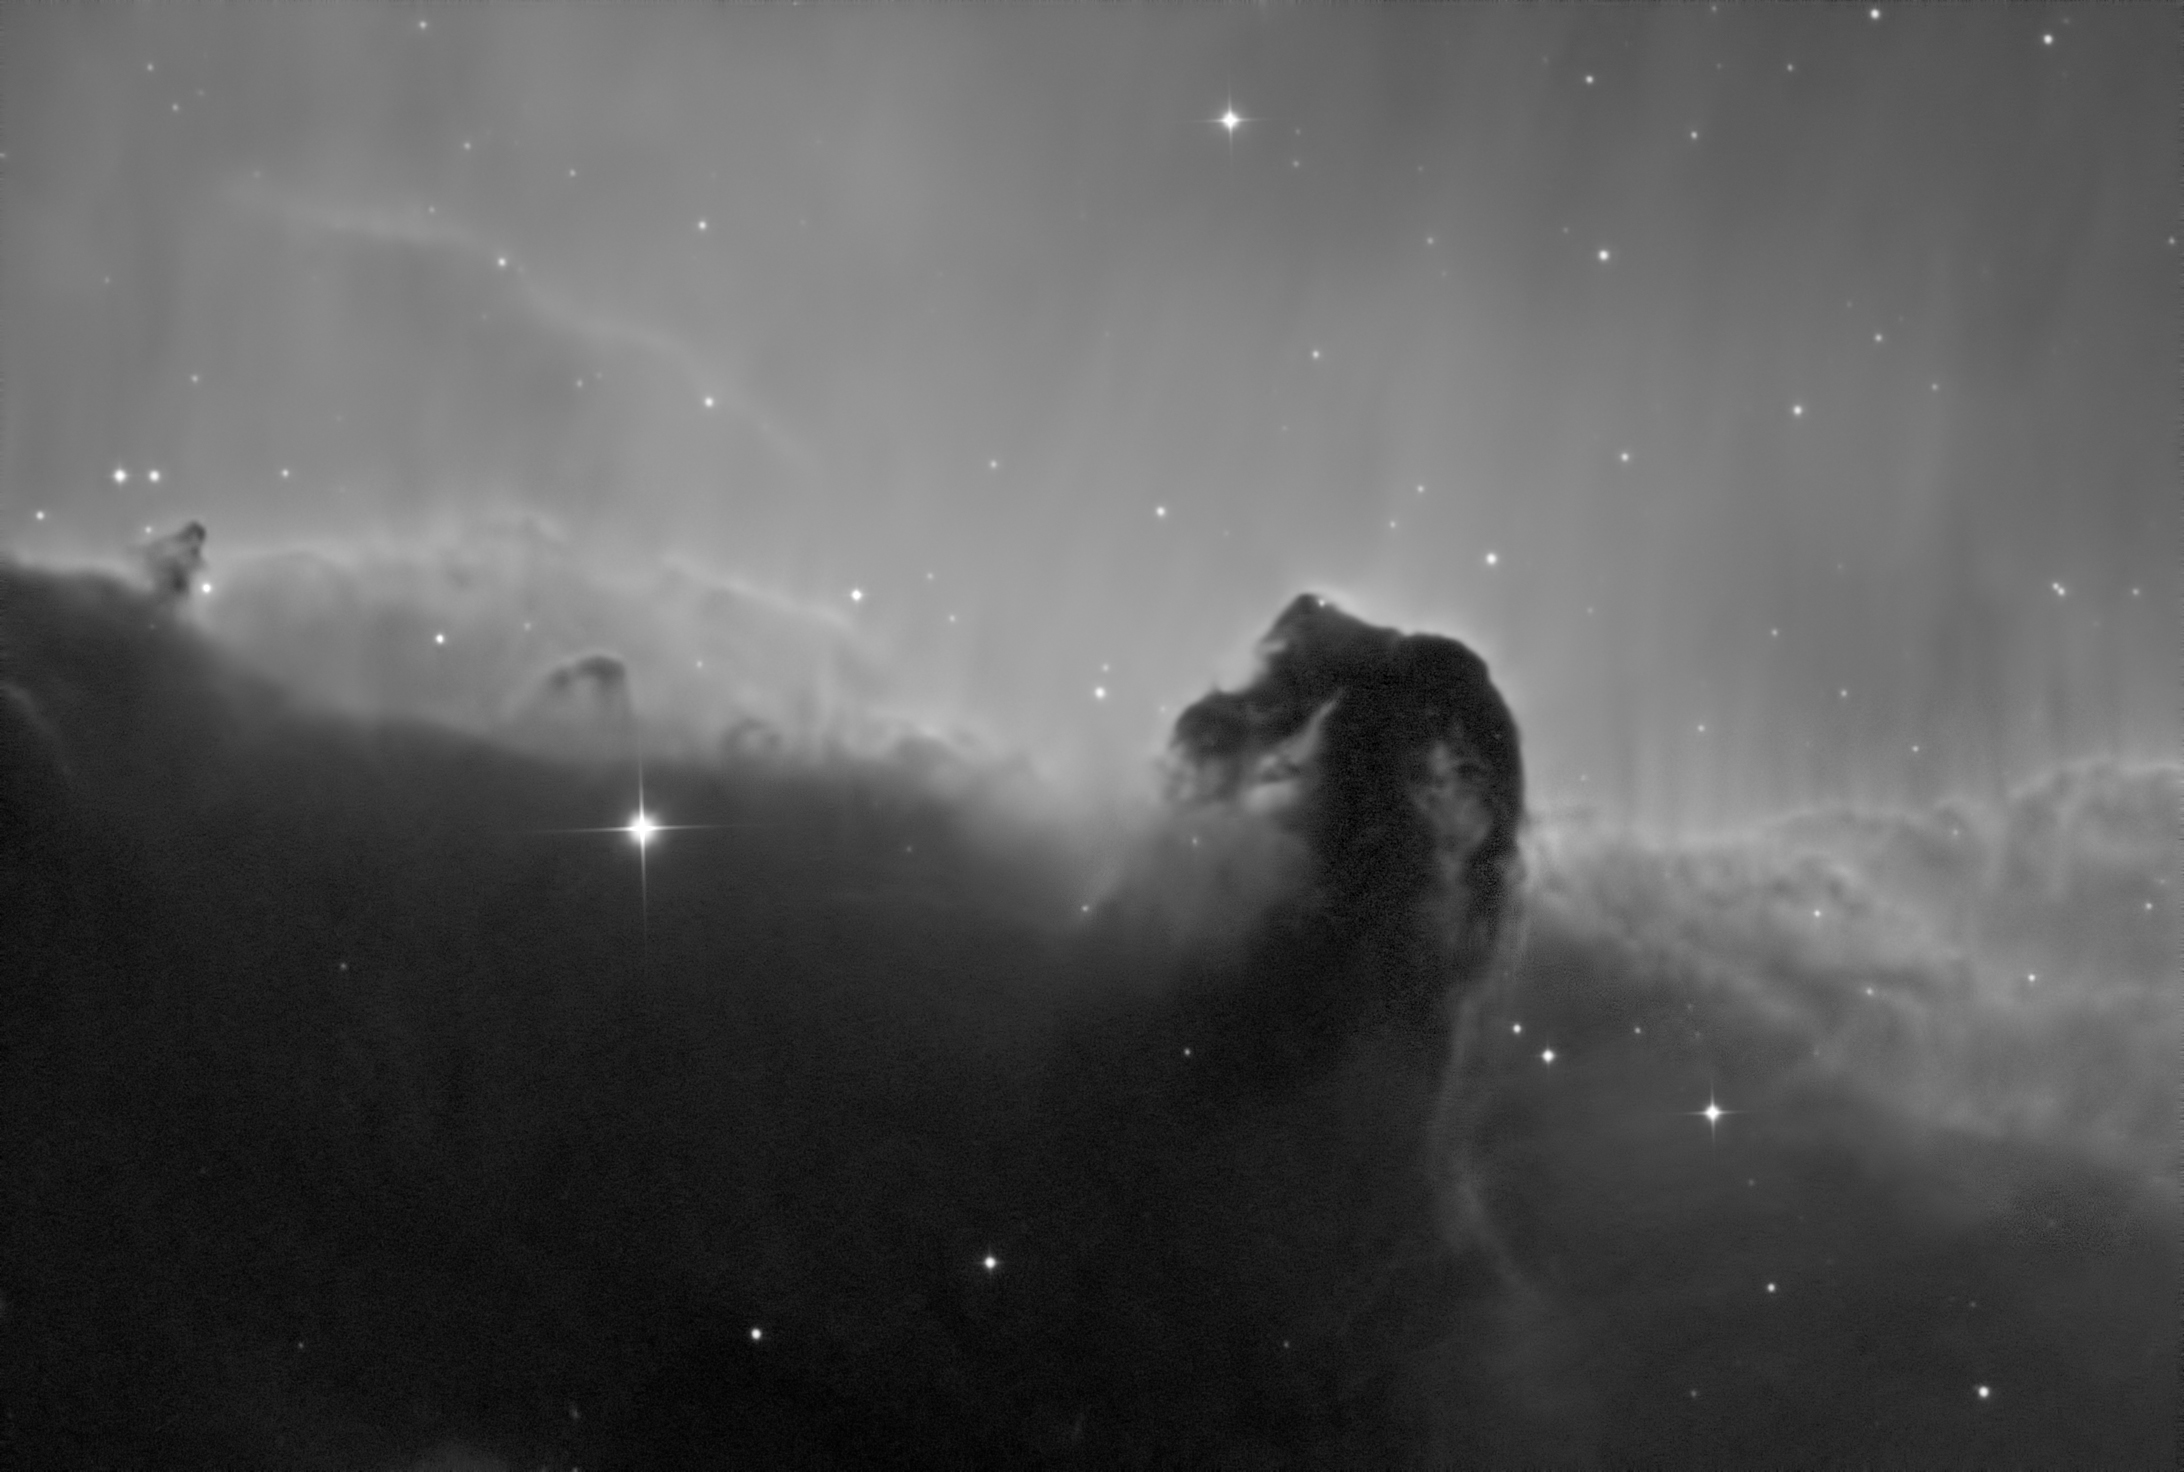 Horsehead Nebula in Ha